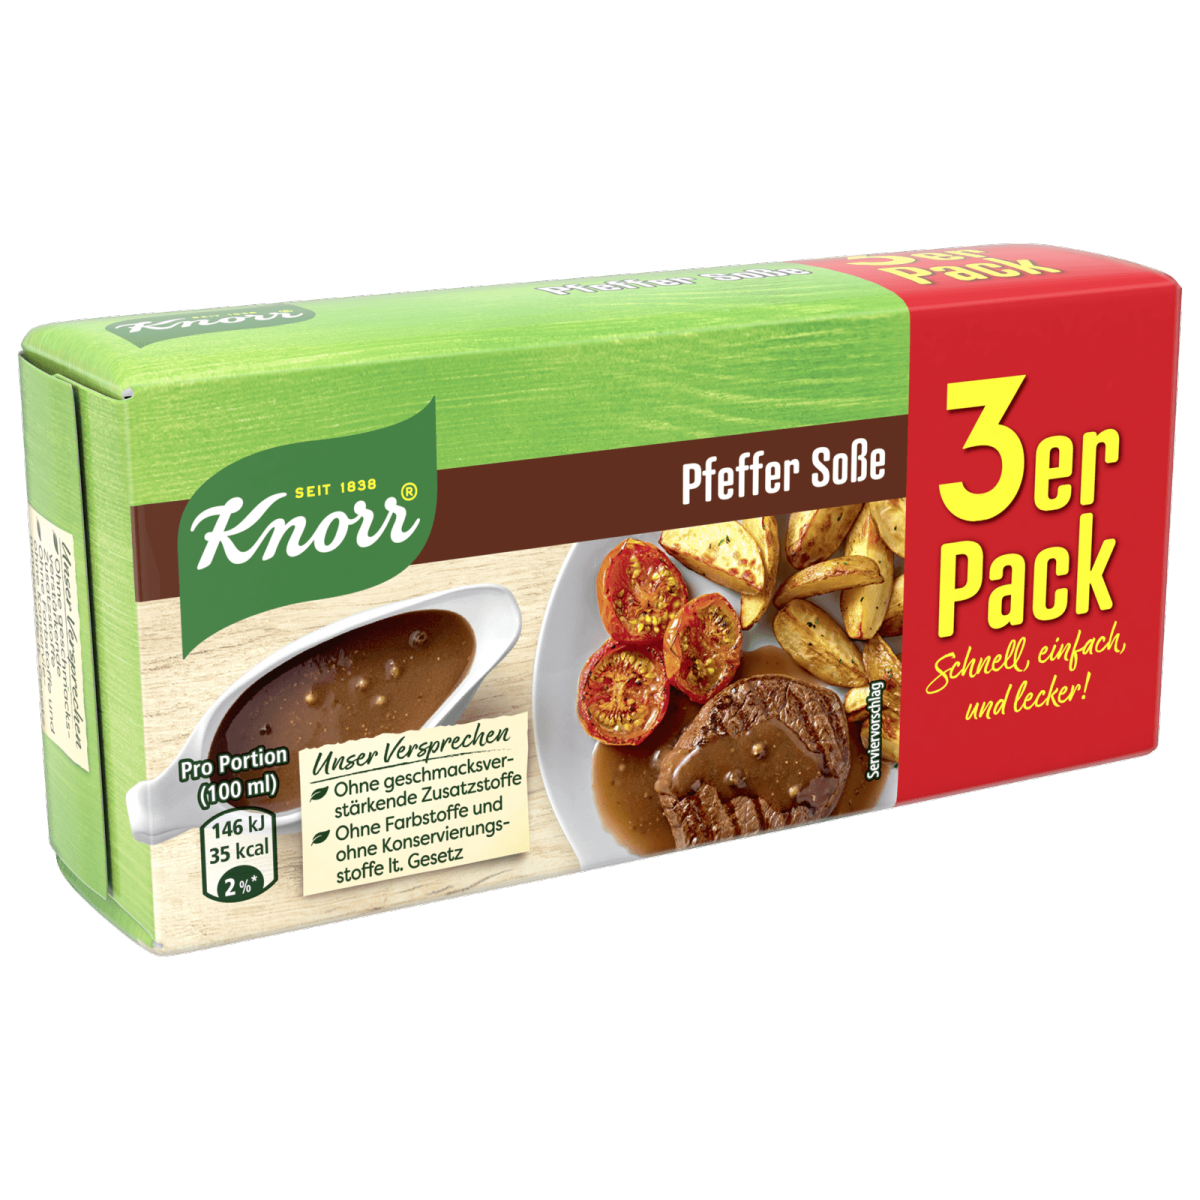 Knorr- Pepper Sauce Mix (Pfeffer sosse) 3 Pack 2.43oz/69g | European ...